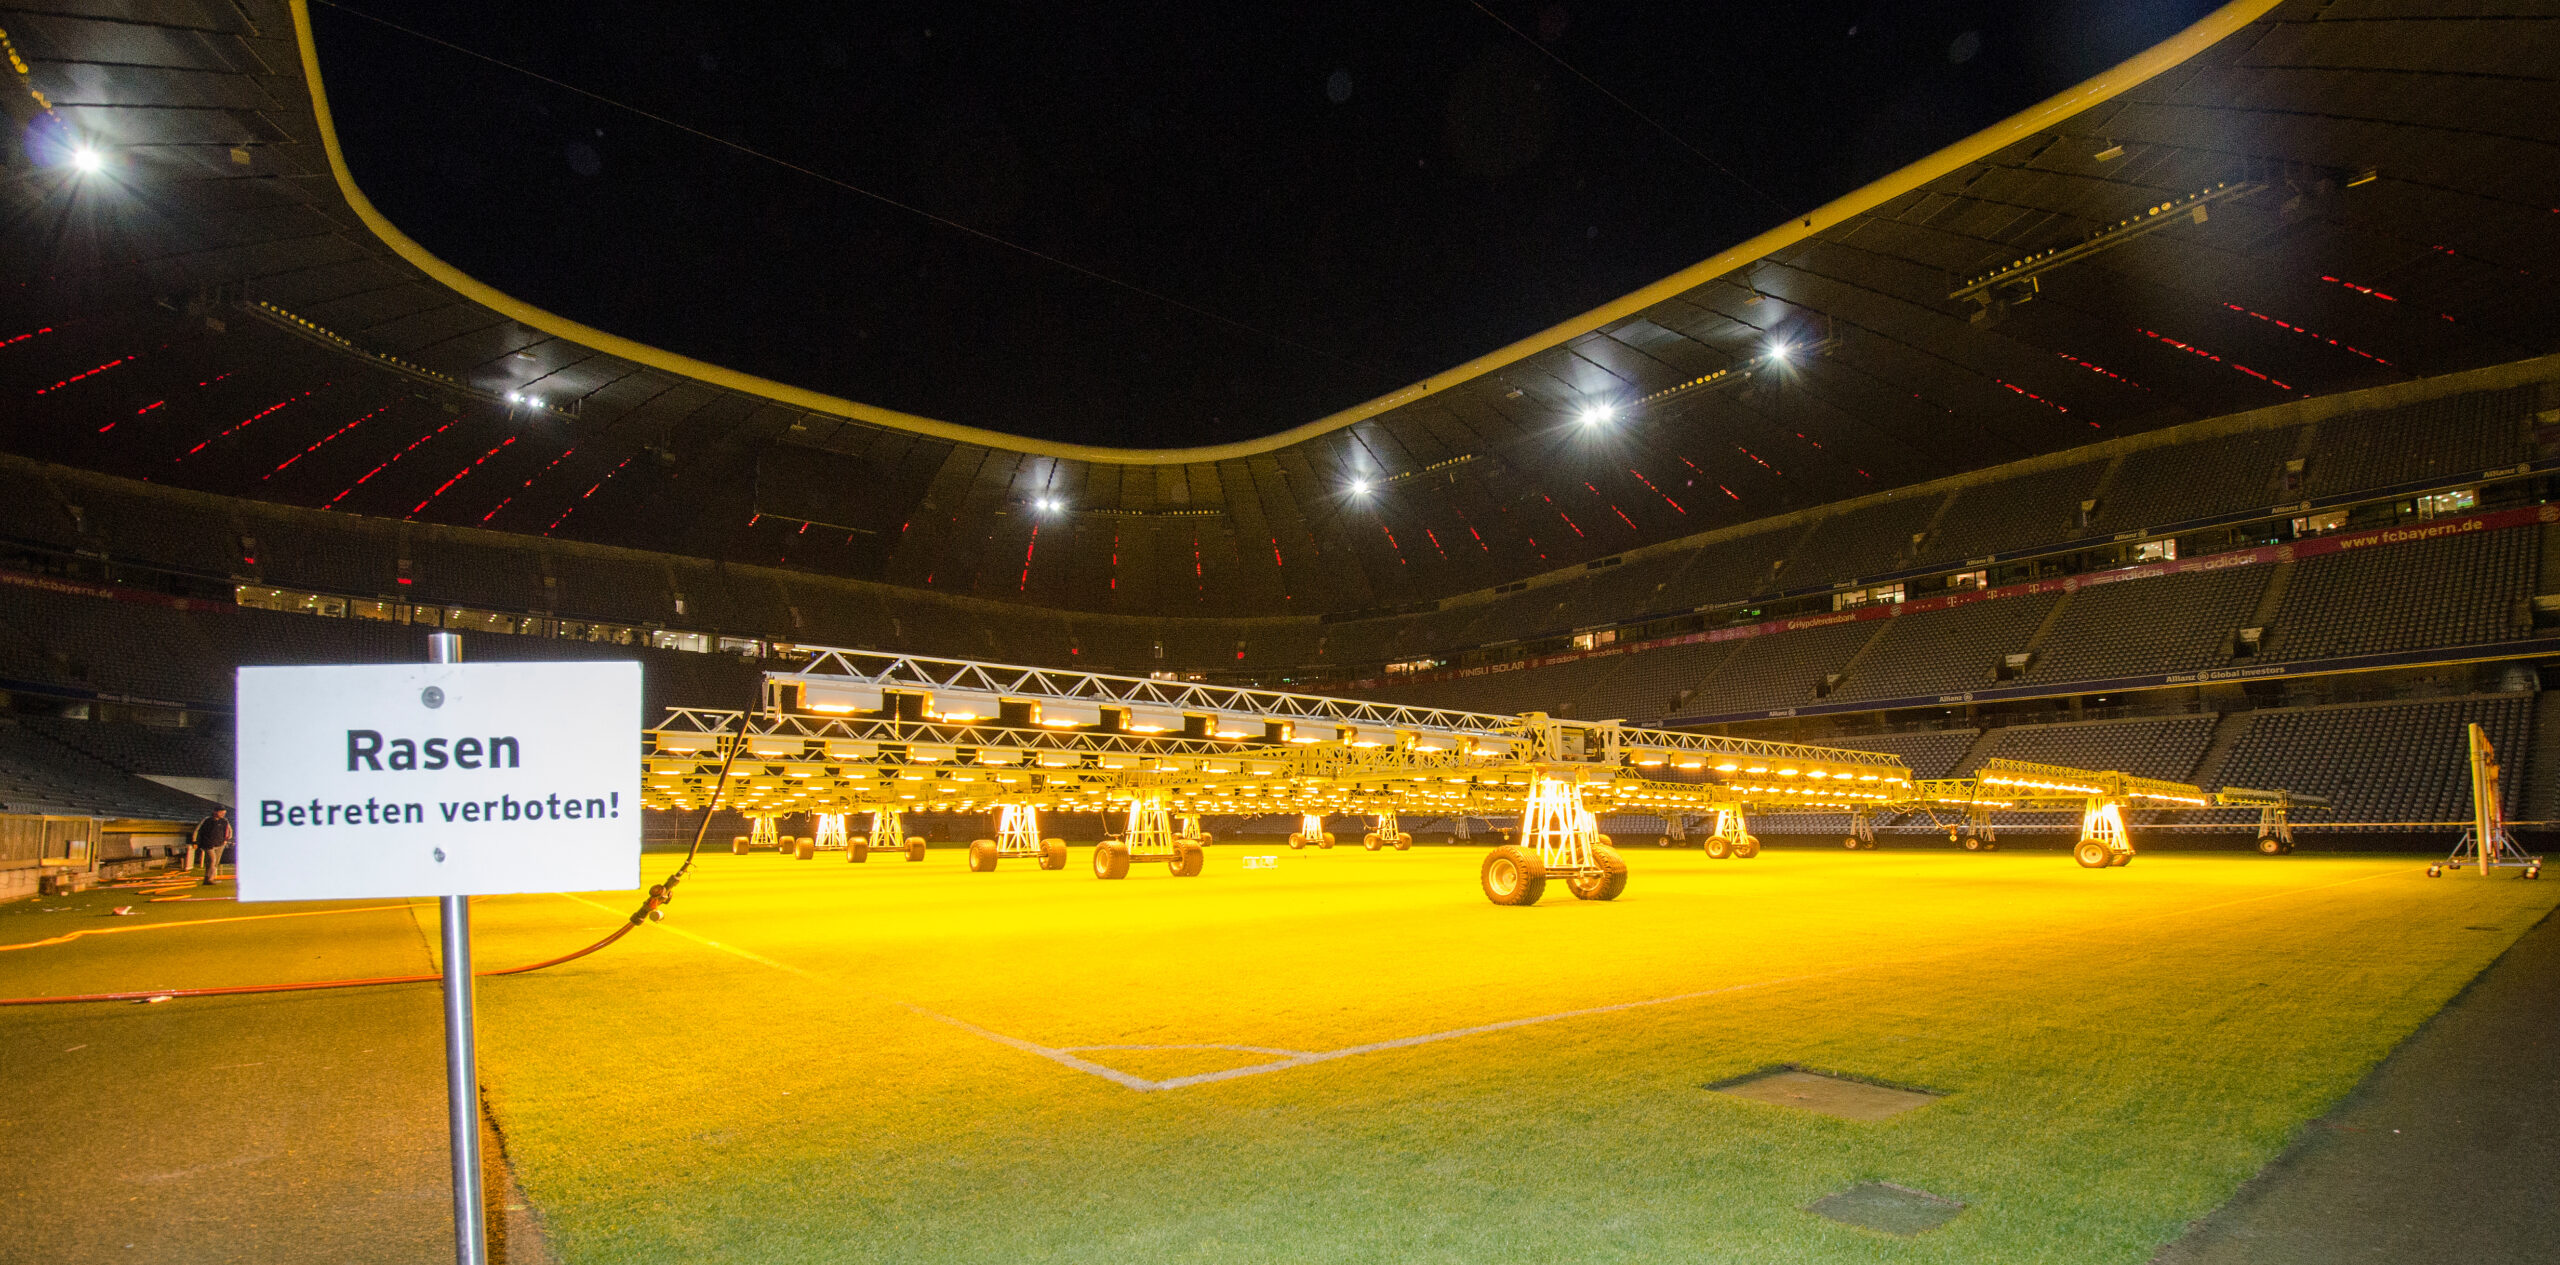 Mehrere Heizkörper der Rasenheizung sind am 19.10.2013 in der Allianz Arena in München (Bayern) während der Nacht zu sehen.